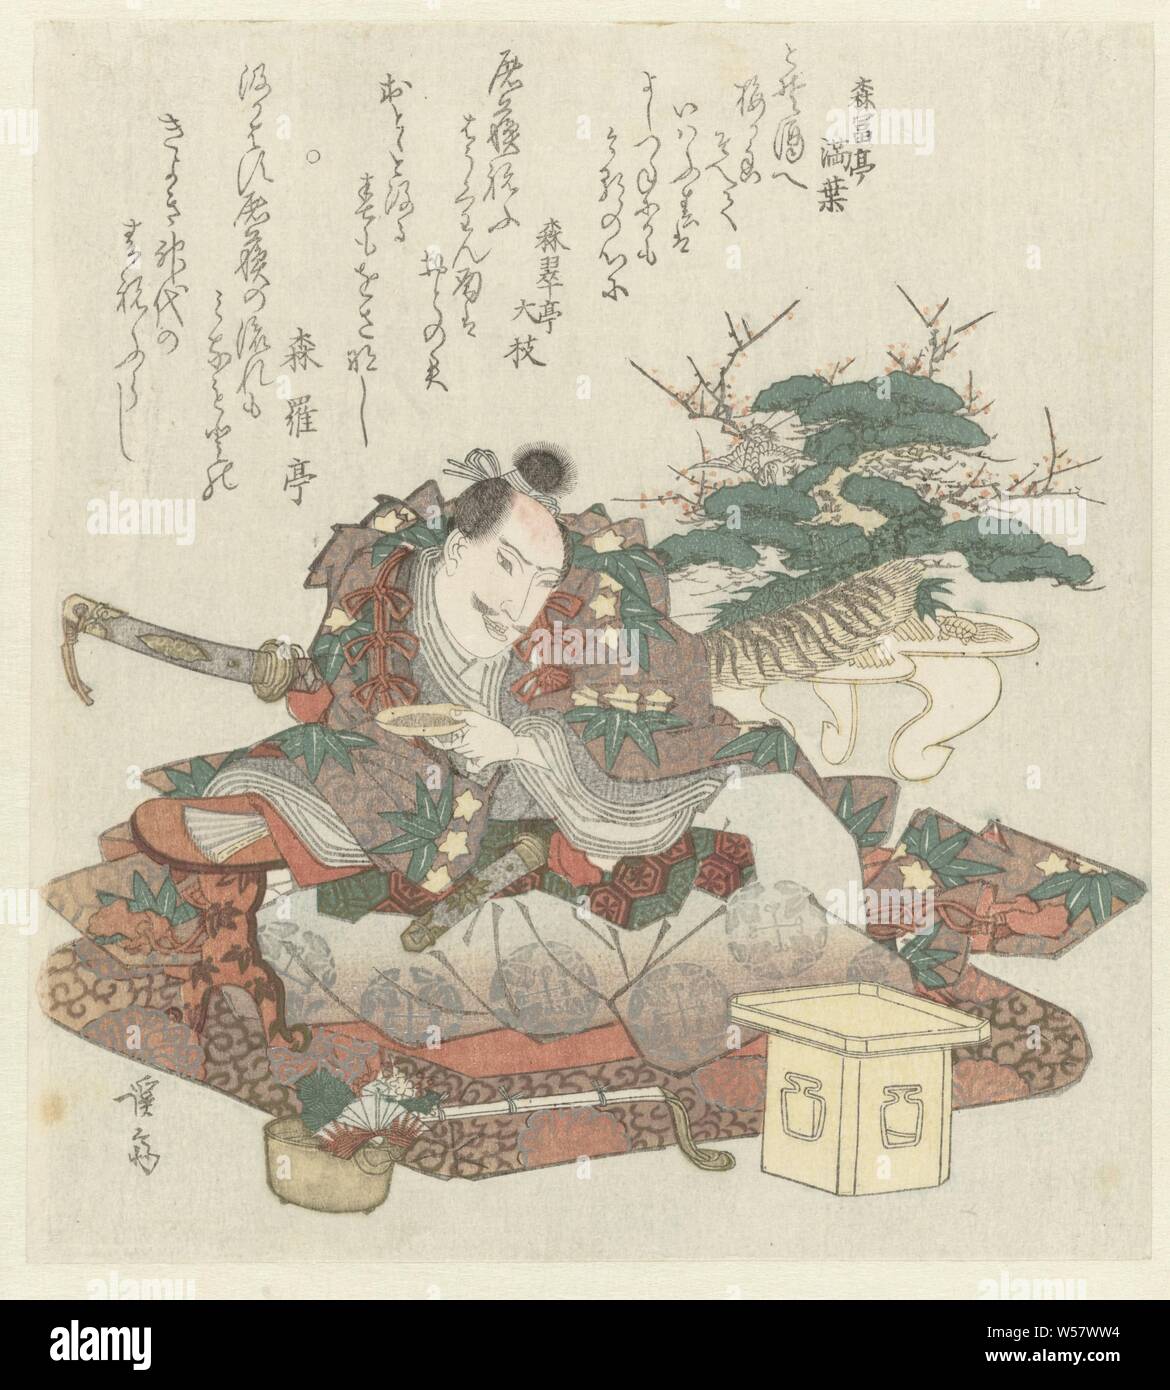 Samurai mit Sake Schüssel in der Hand, Minamoto no Yoshitsune auf einen Brocade Kissen mit einer sake Becher in der Hand sitzt. Vor ihm handelt es sich um einen zeremoniellen Willen, hinter ihm typische Neues Jahr Dekorationen wie ein Miniatur Kiefer und Pflaume mit einem Kran und einer Schildkröte - alle Symbole für ein langes und glückliches Leben. Mit drei Gedichte, links Blatt eines Diptychons, alkoholische Getränke, Bäume: Kiefer, Keisai Eisen (auf Objekt erwähnt), Japan, 1825-1829, Papier, Farbholzschnitt, H 207 mm x B 188 mm Stockfoto